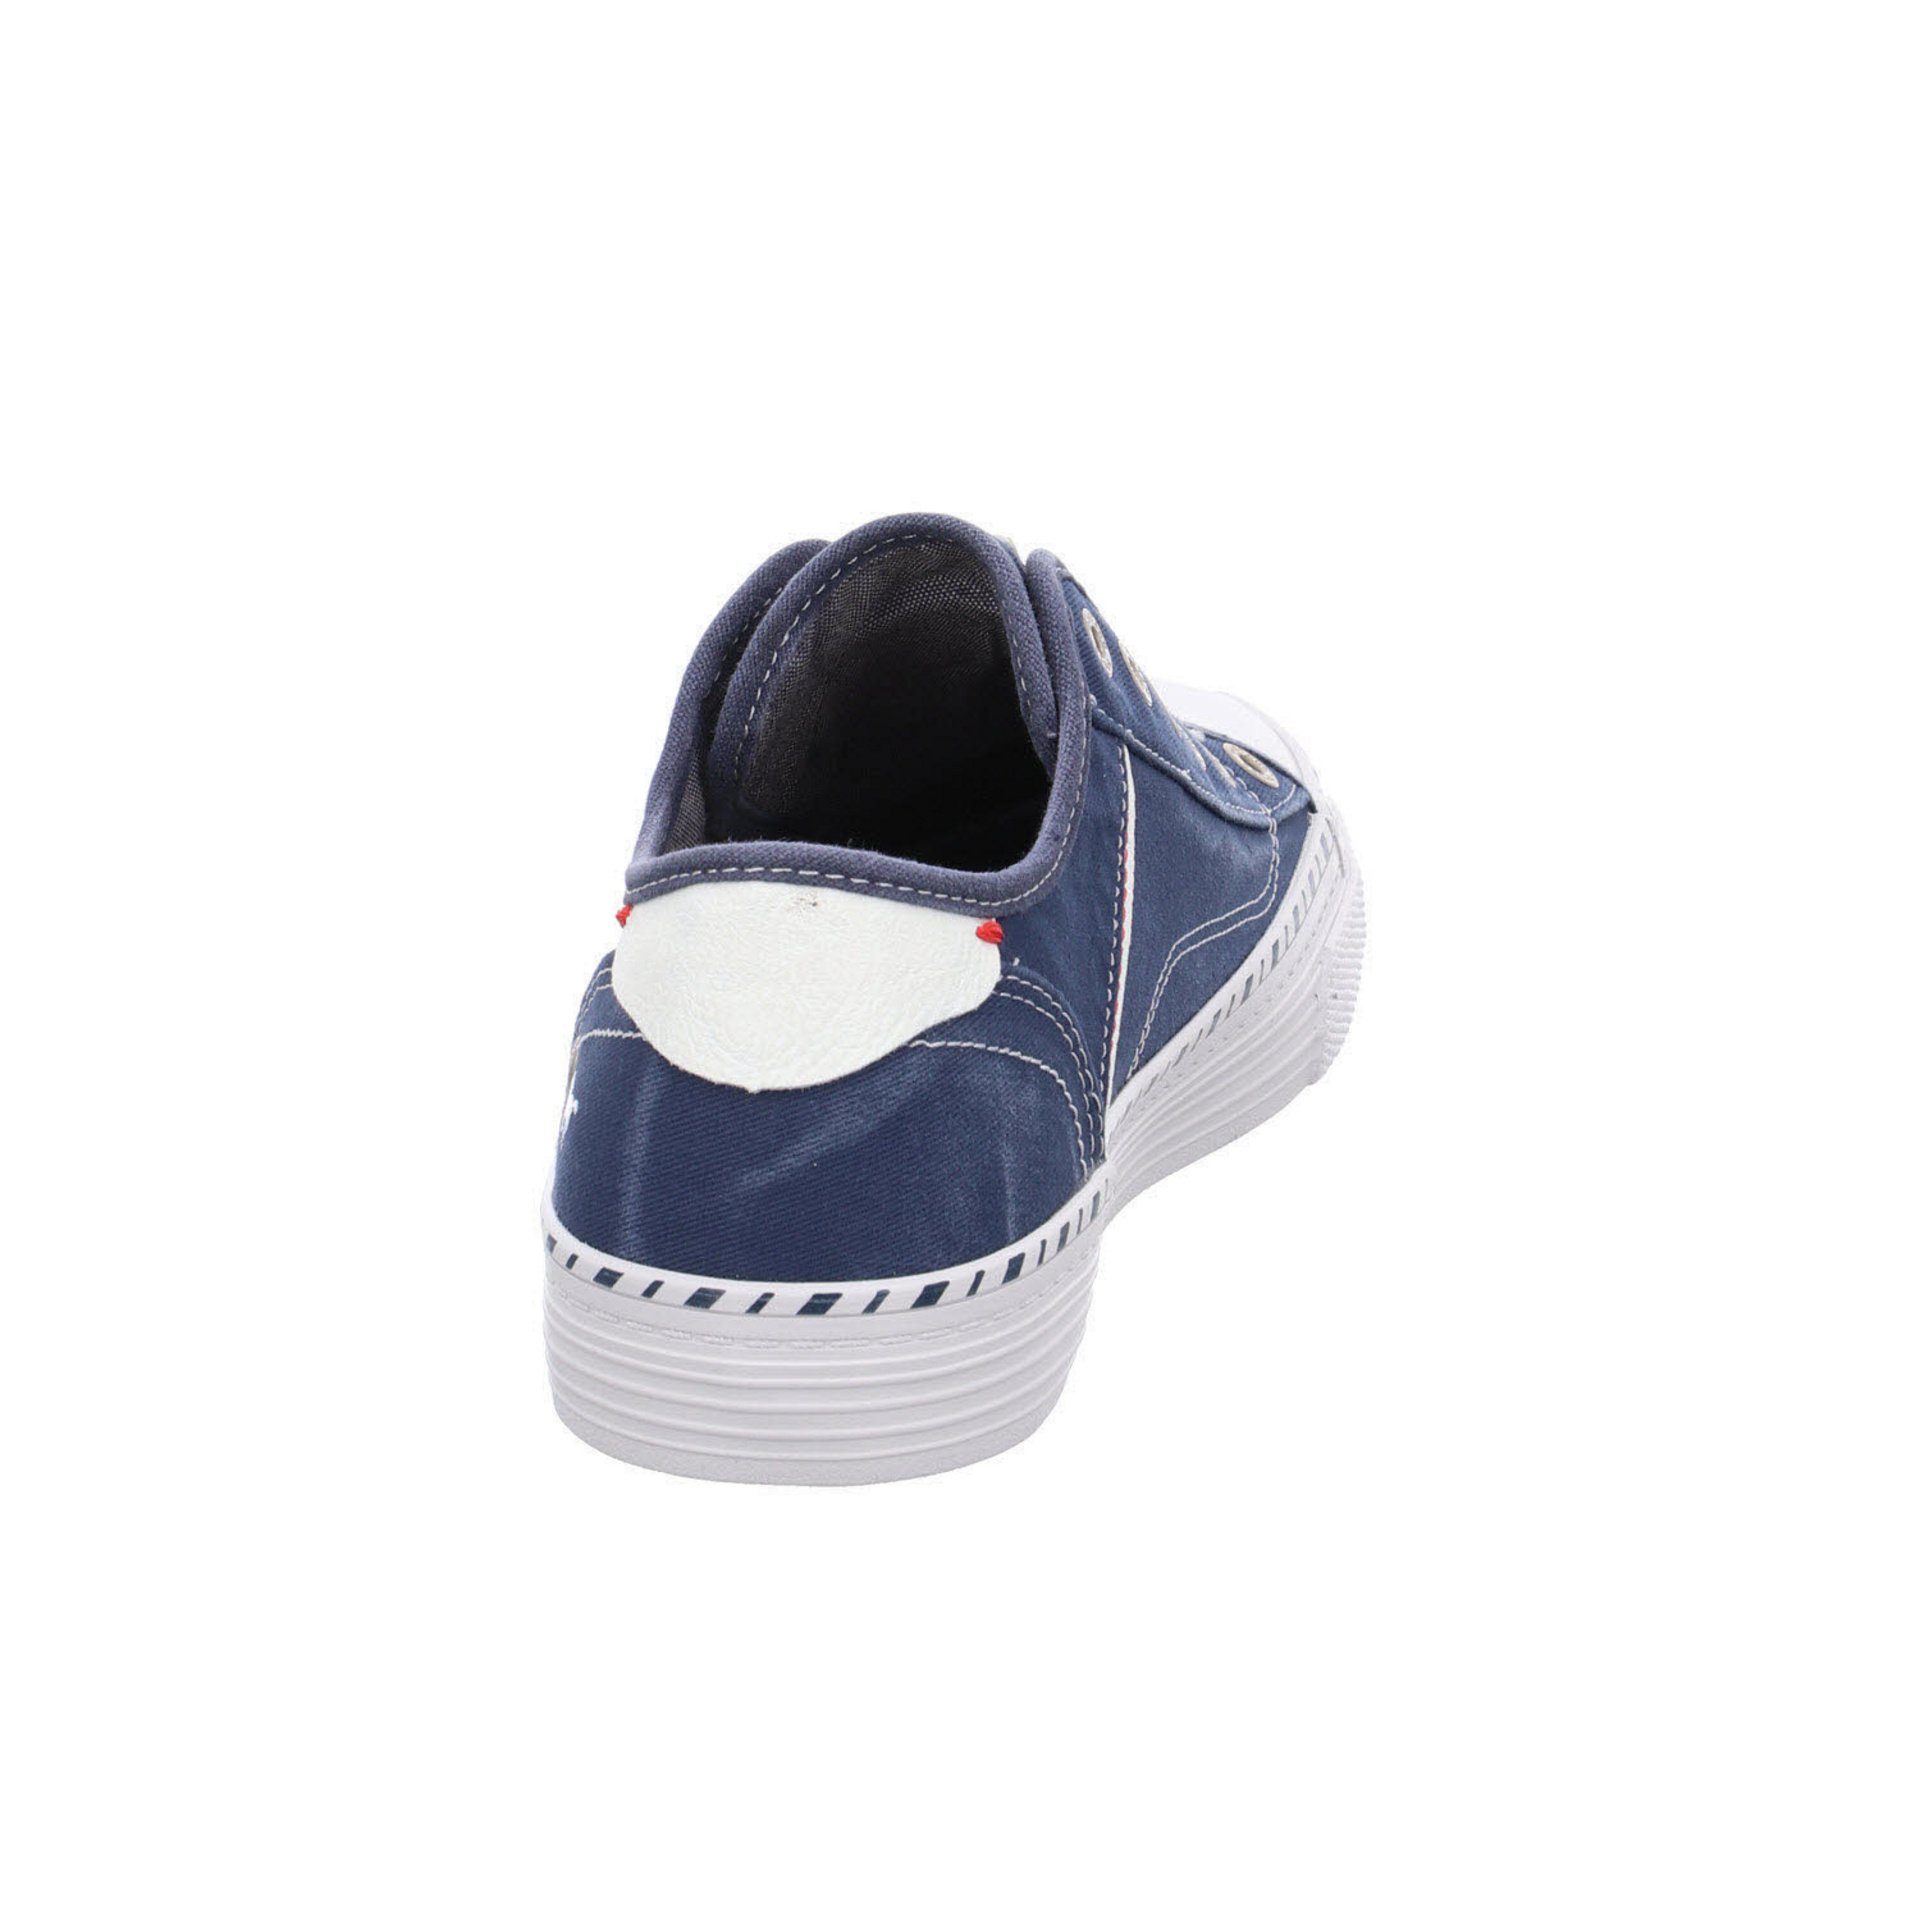 Sneaker Shoes Sport Textil Damen Schnürschuh Sneaker Mustang Halbschuhe jeansblau Schuhe